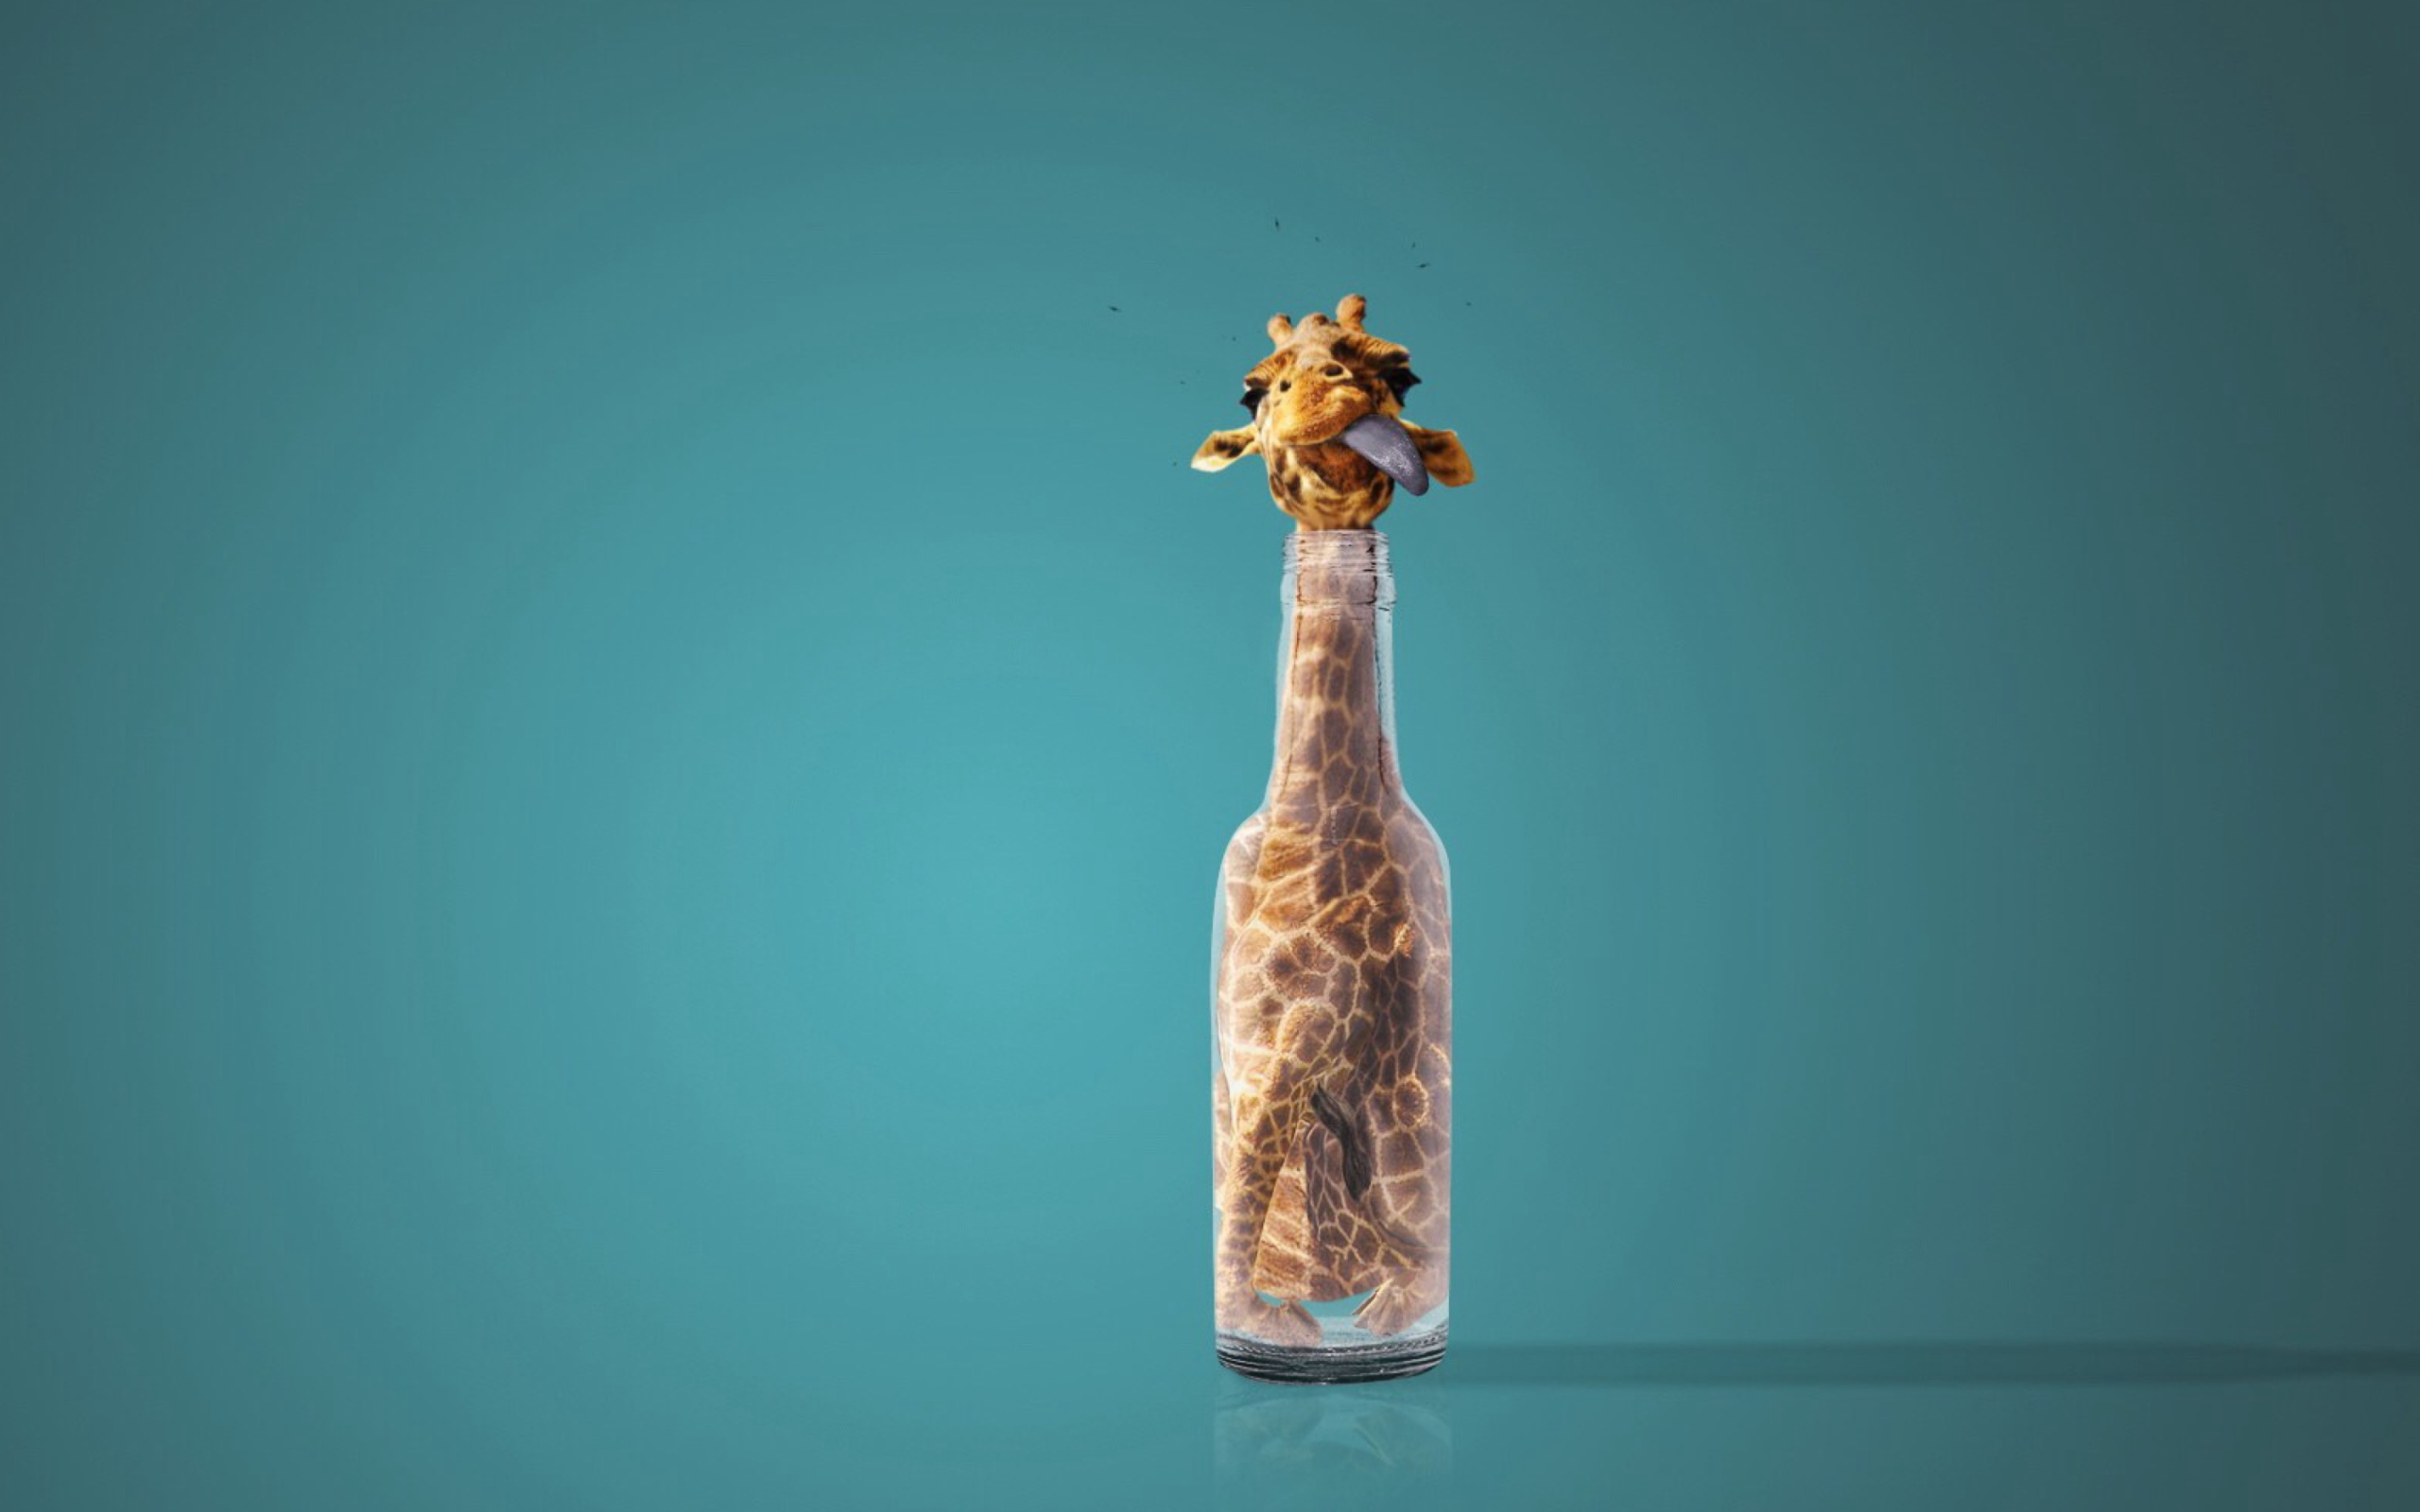 Giraffe In Bottle wallpaper 2560x1600